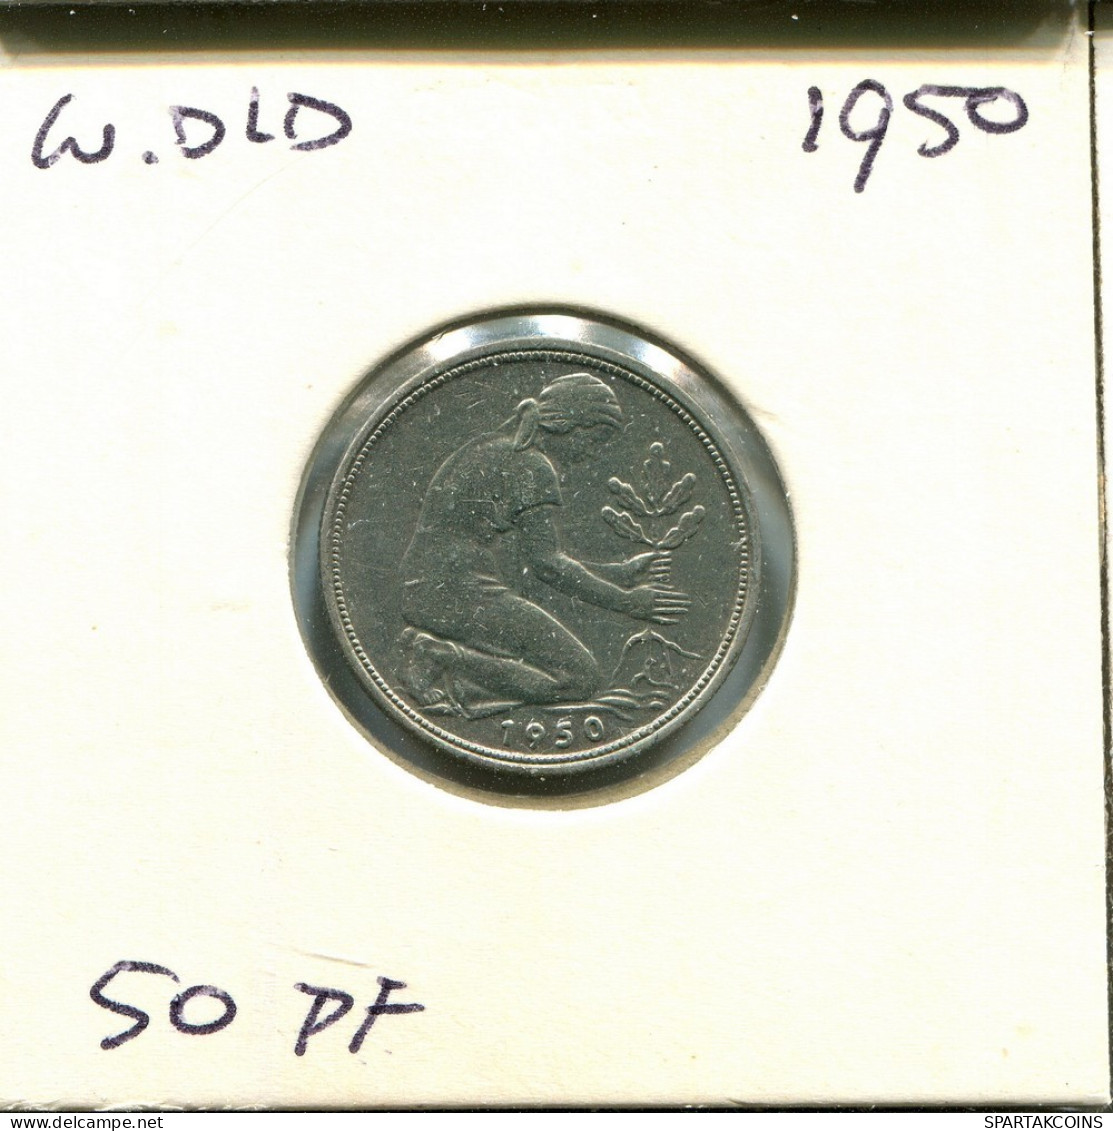 50 PFENNIG 1950 J BRD ALEMANIA Moneda GERMANY #AU734.E.A - 50 Pfennig